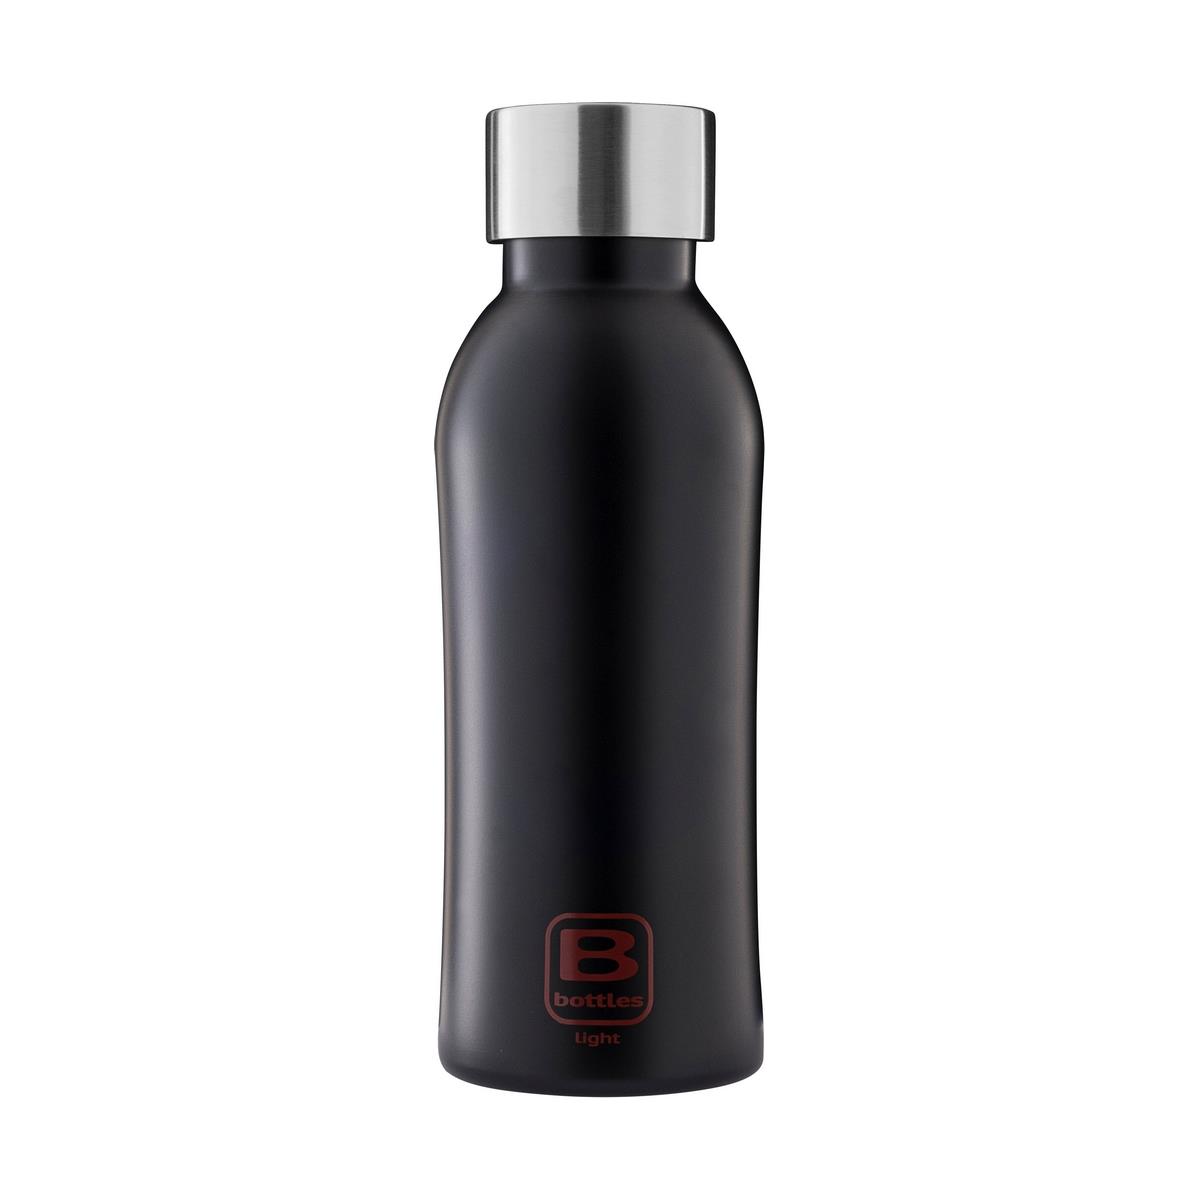 photo B Bottles Light - Matt Black - 530 ml - Ultra light and compact 18/10 stainless steel bottle